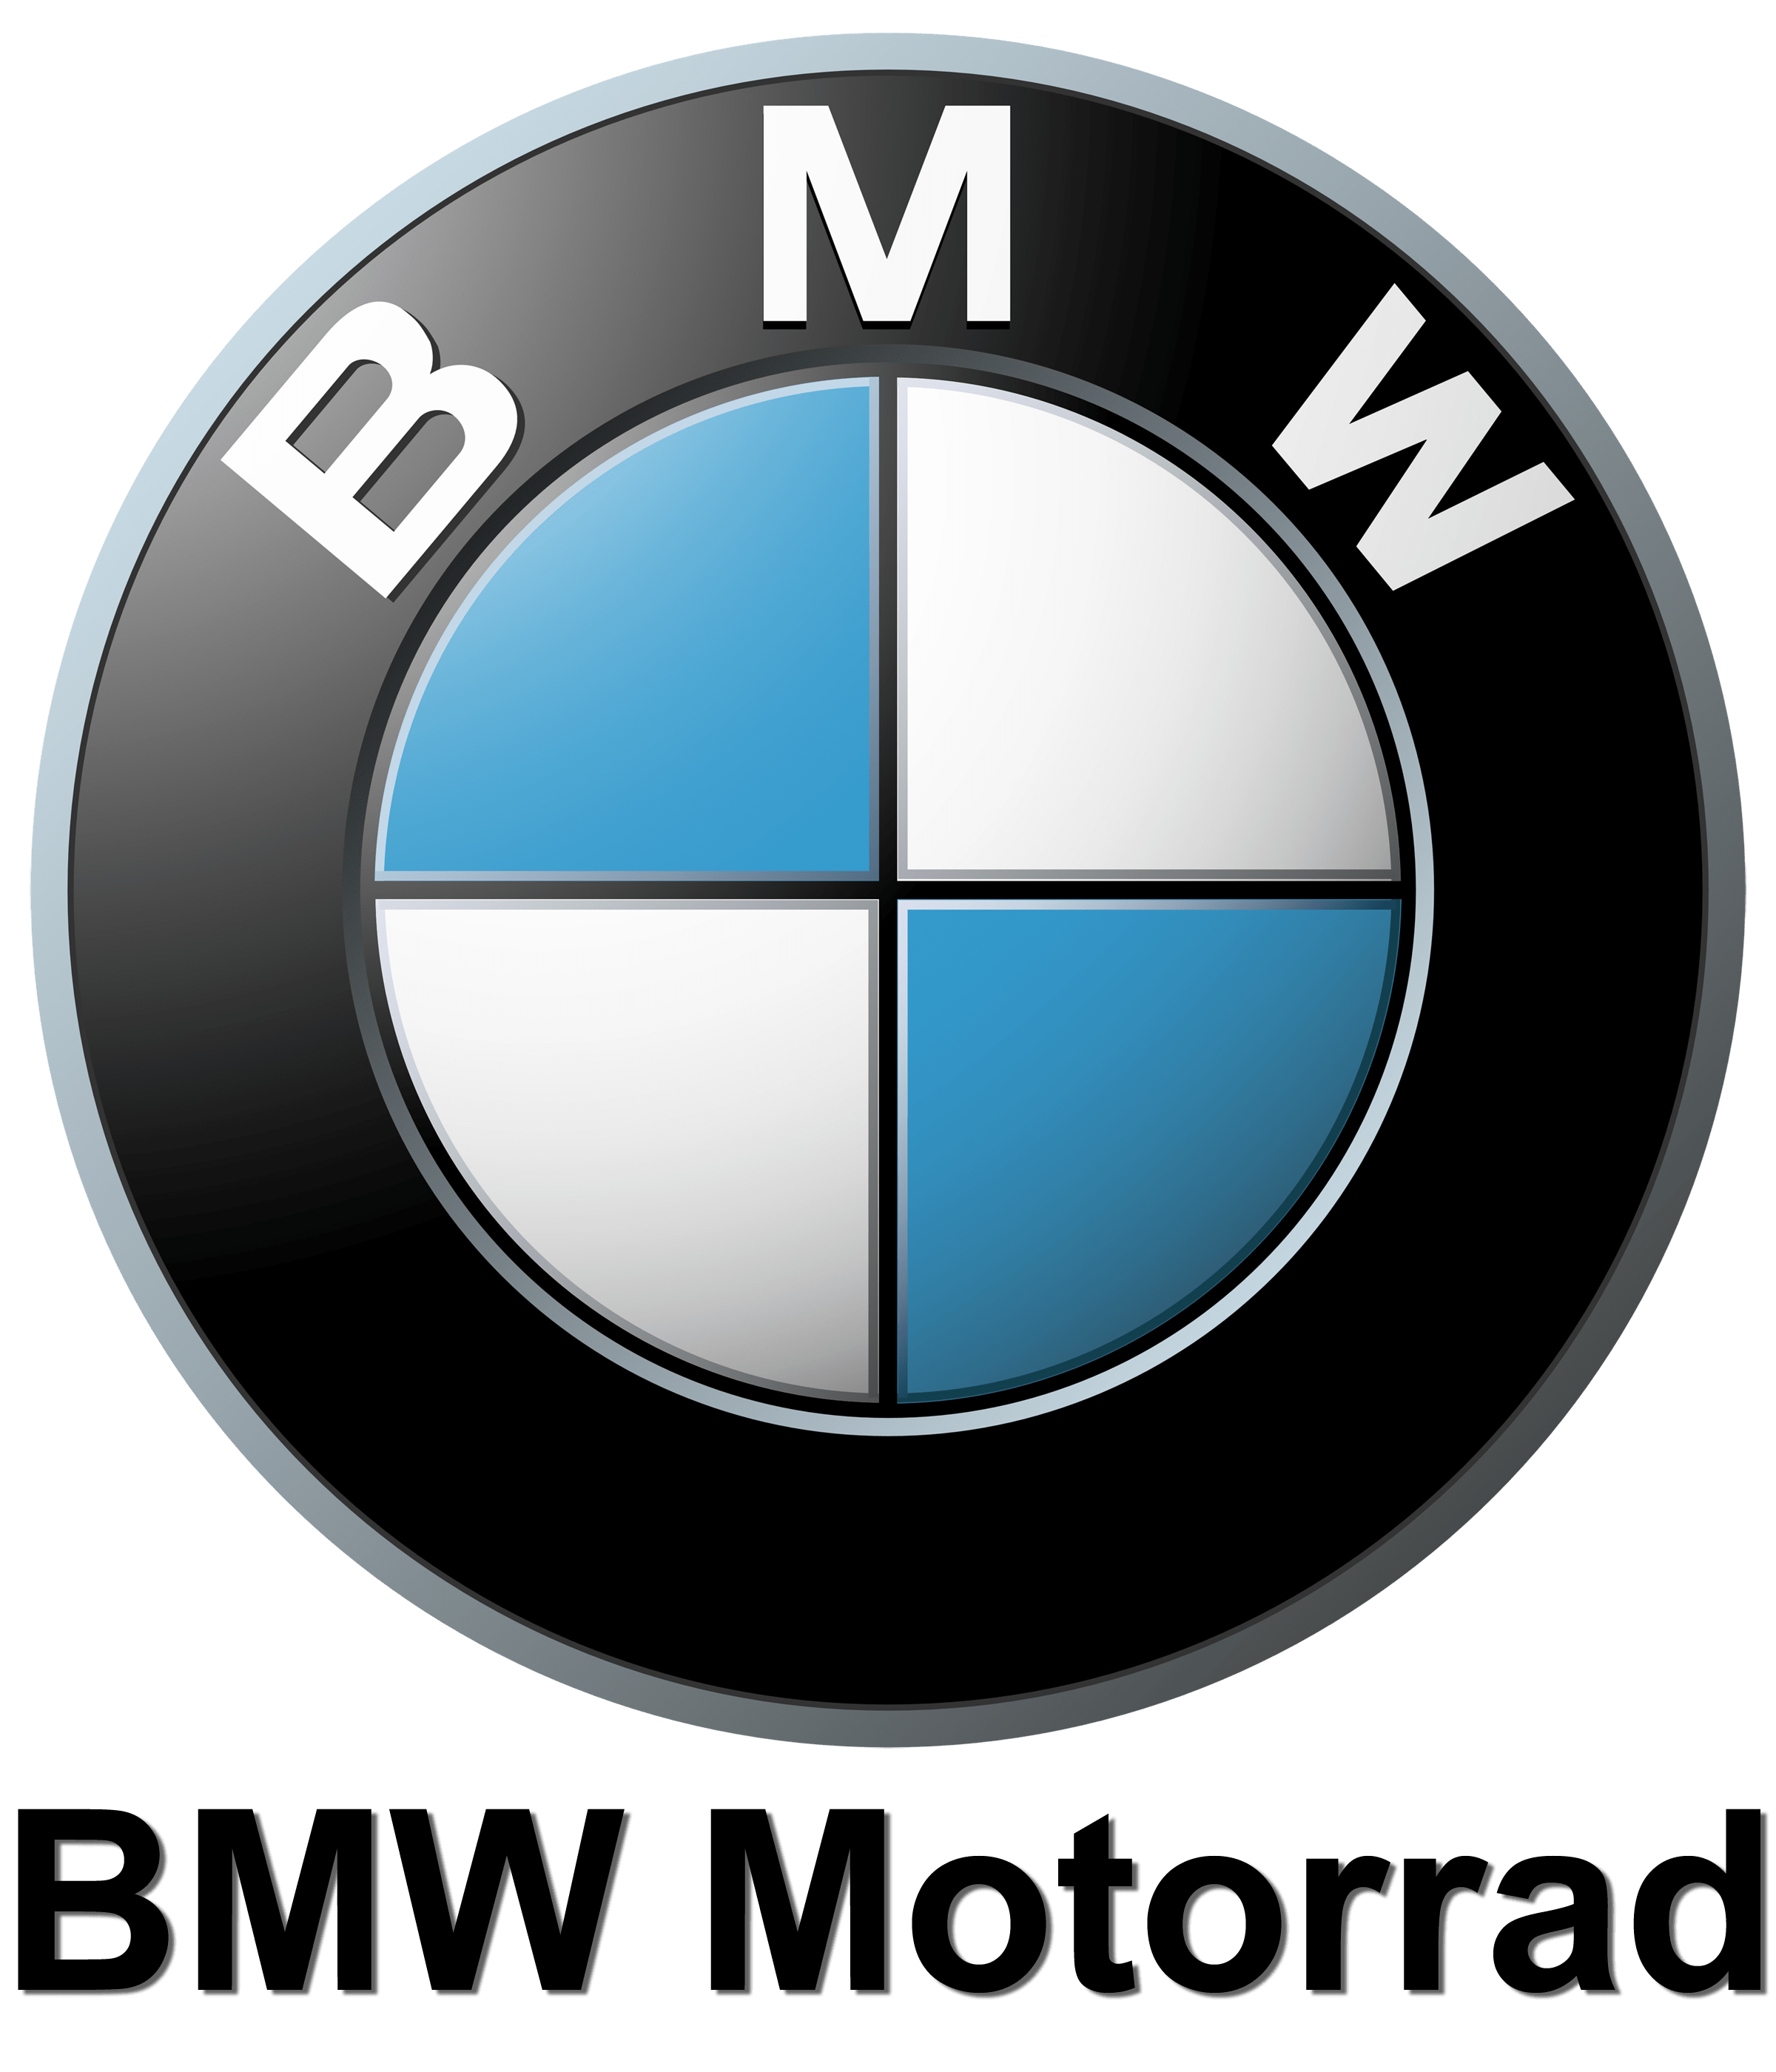 BMW Motorcycle Logo - BMW Motorcycle Logo